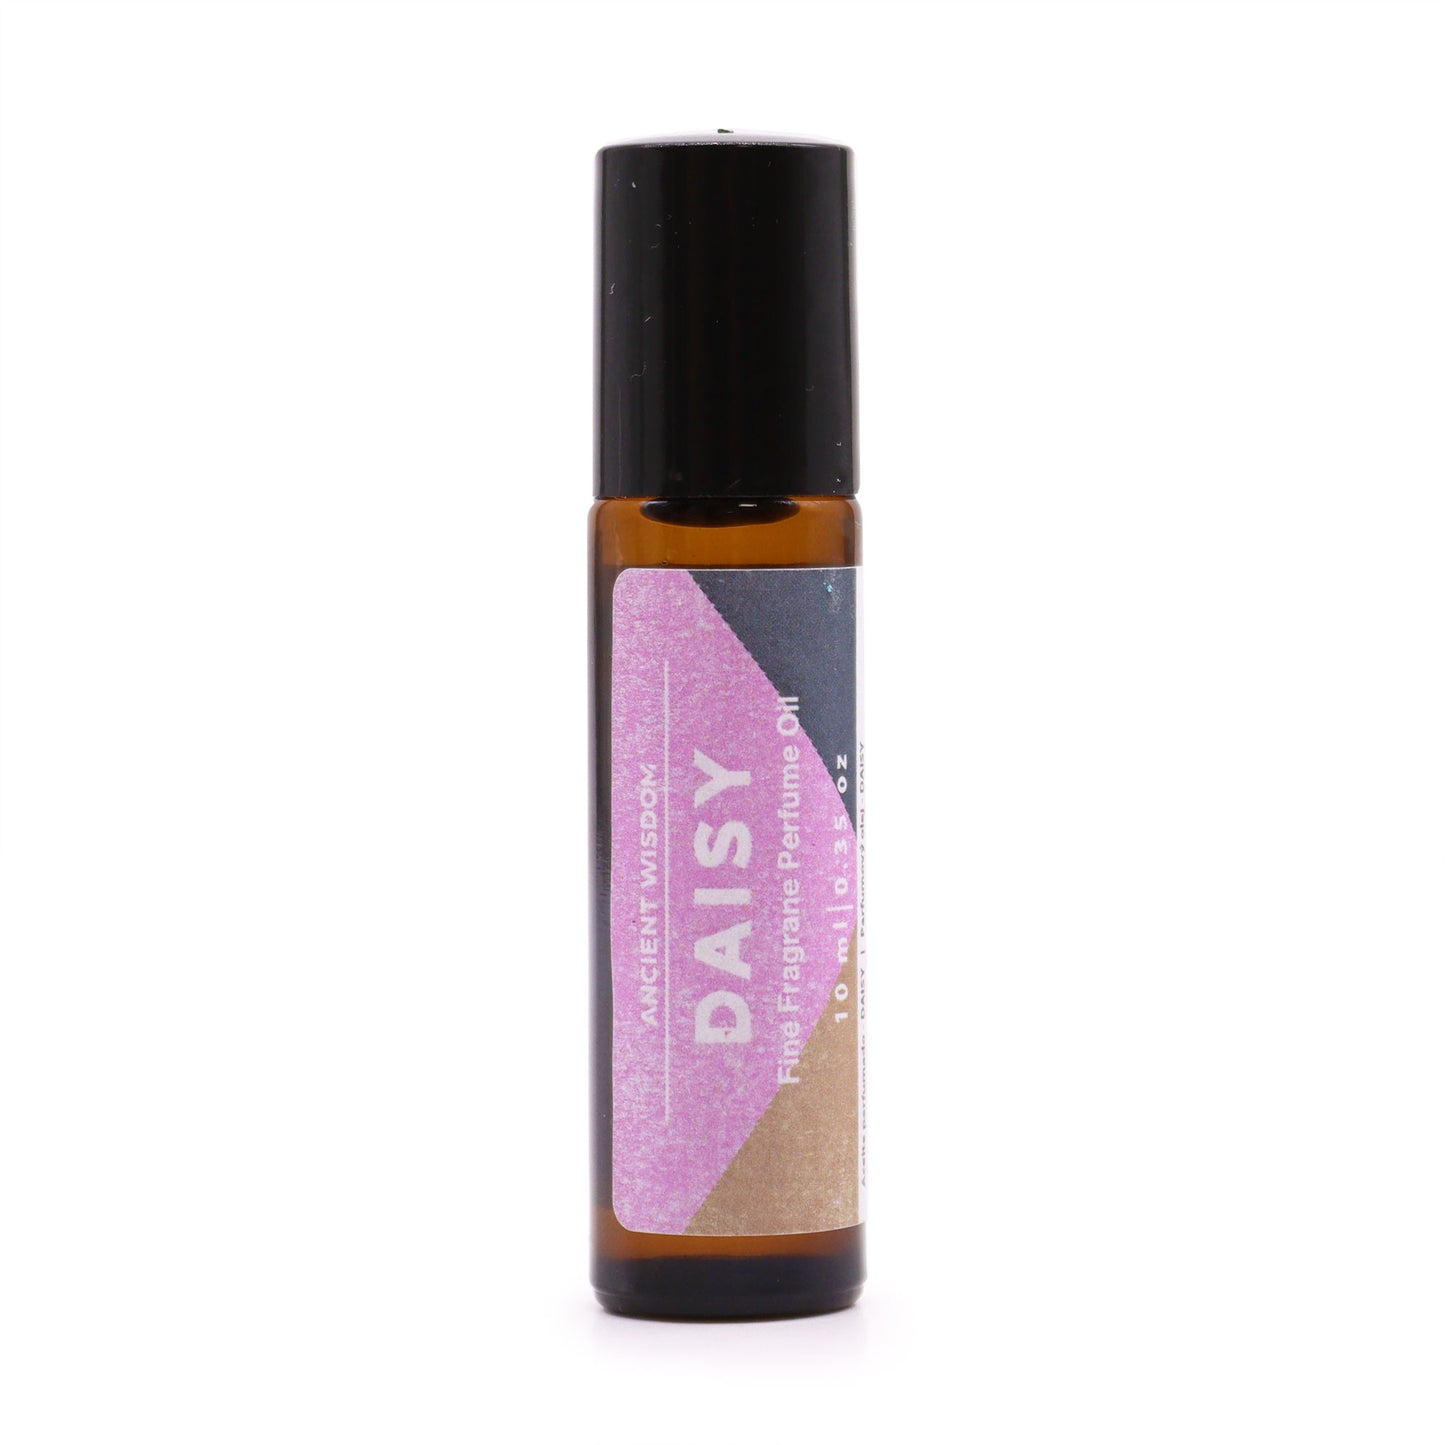 Daisy Fine Fragrance Perfume Oil 10ml - Kaftans direct